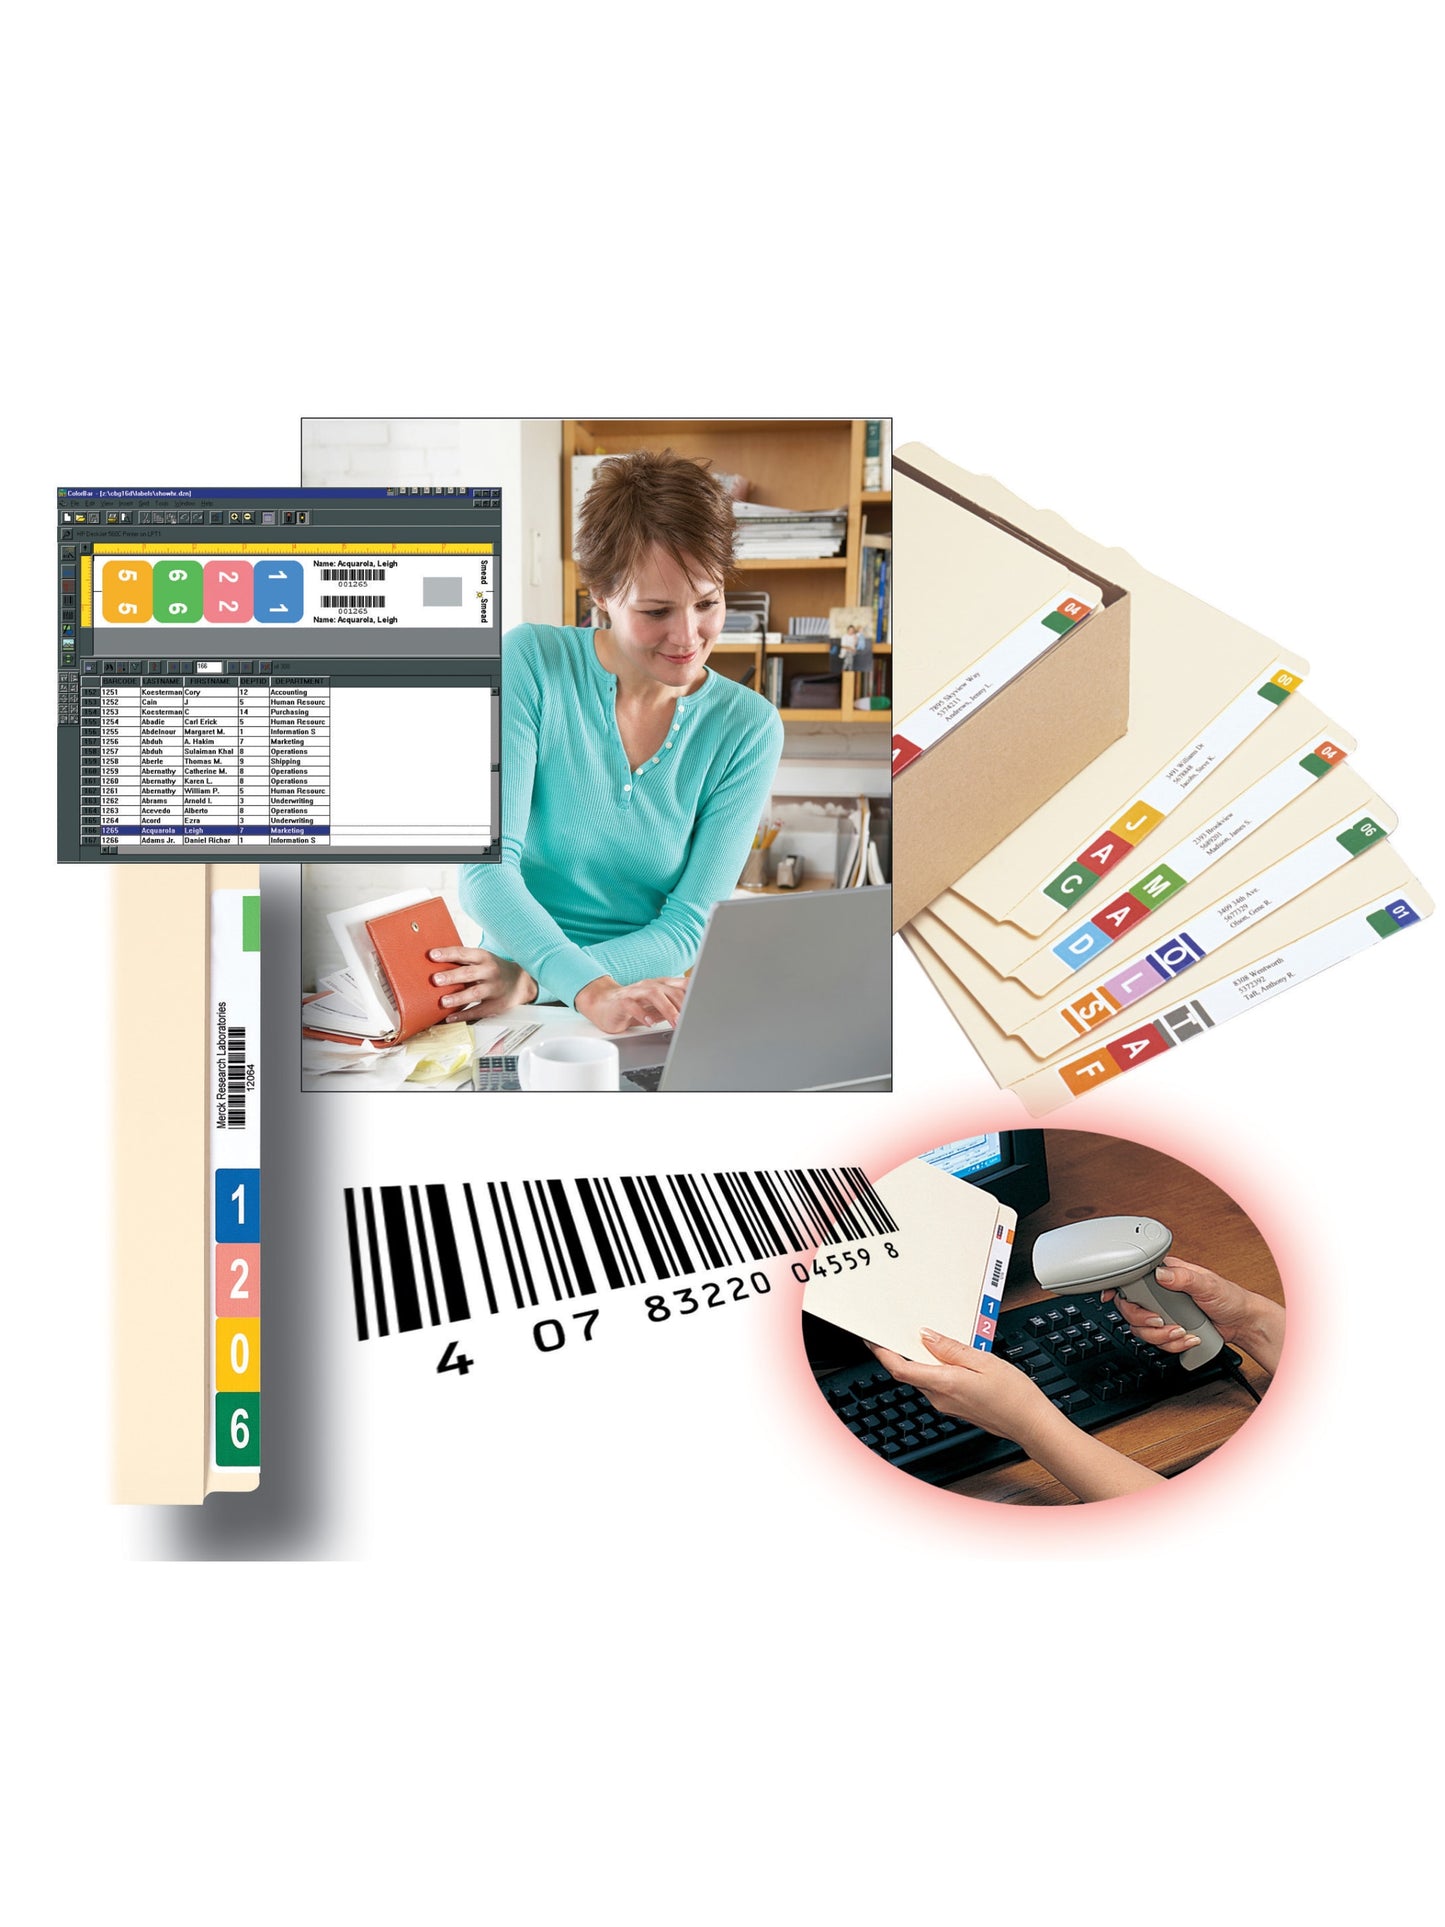 ColorBar®  Inkjet Labels, White Color, 1-7/16” X 8” Size, Set of 1008, 086486024839